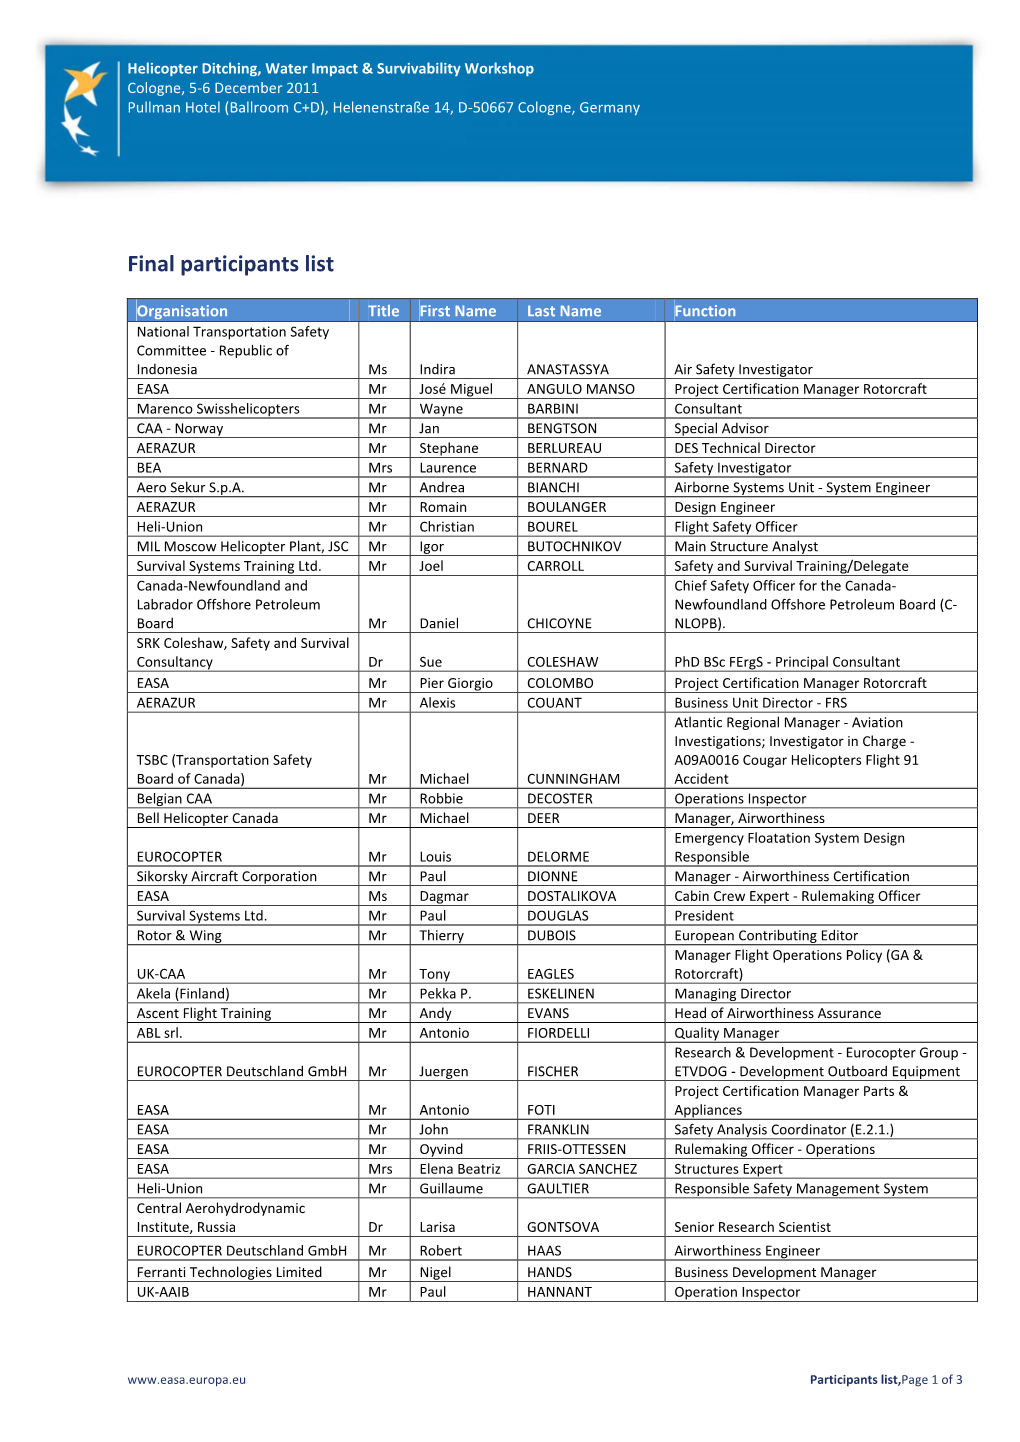 Final Participants List